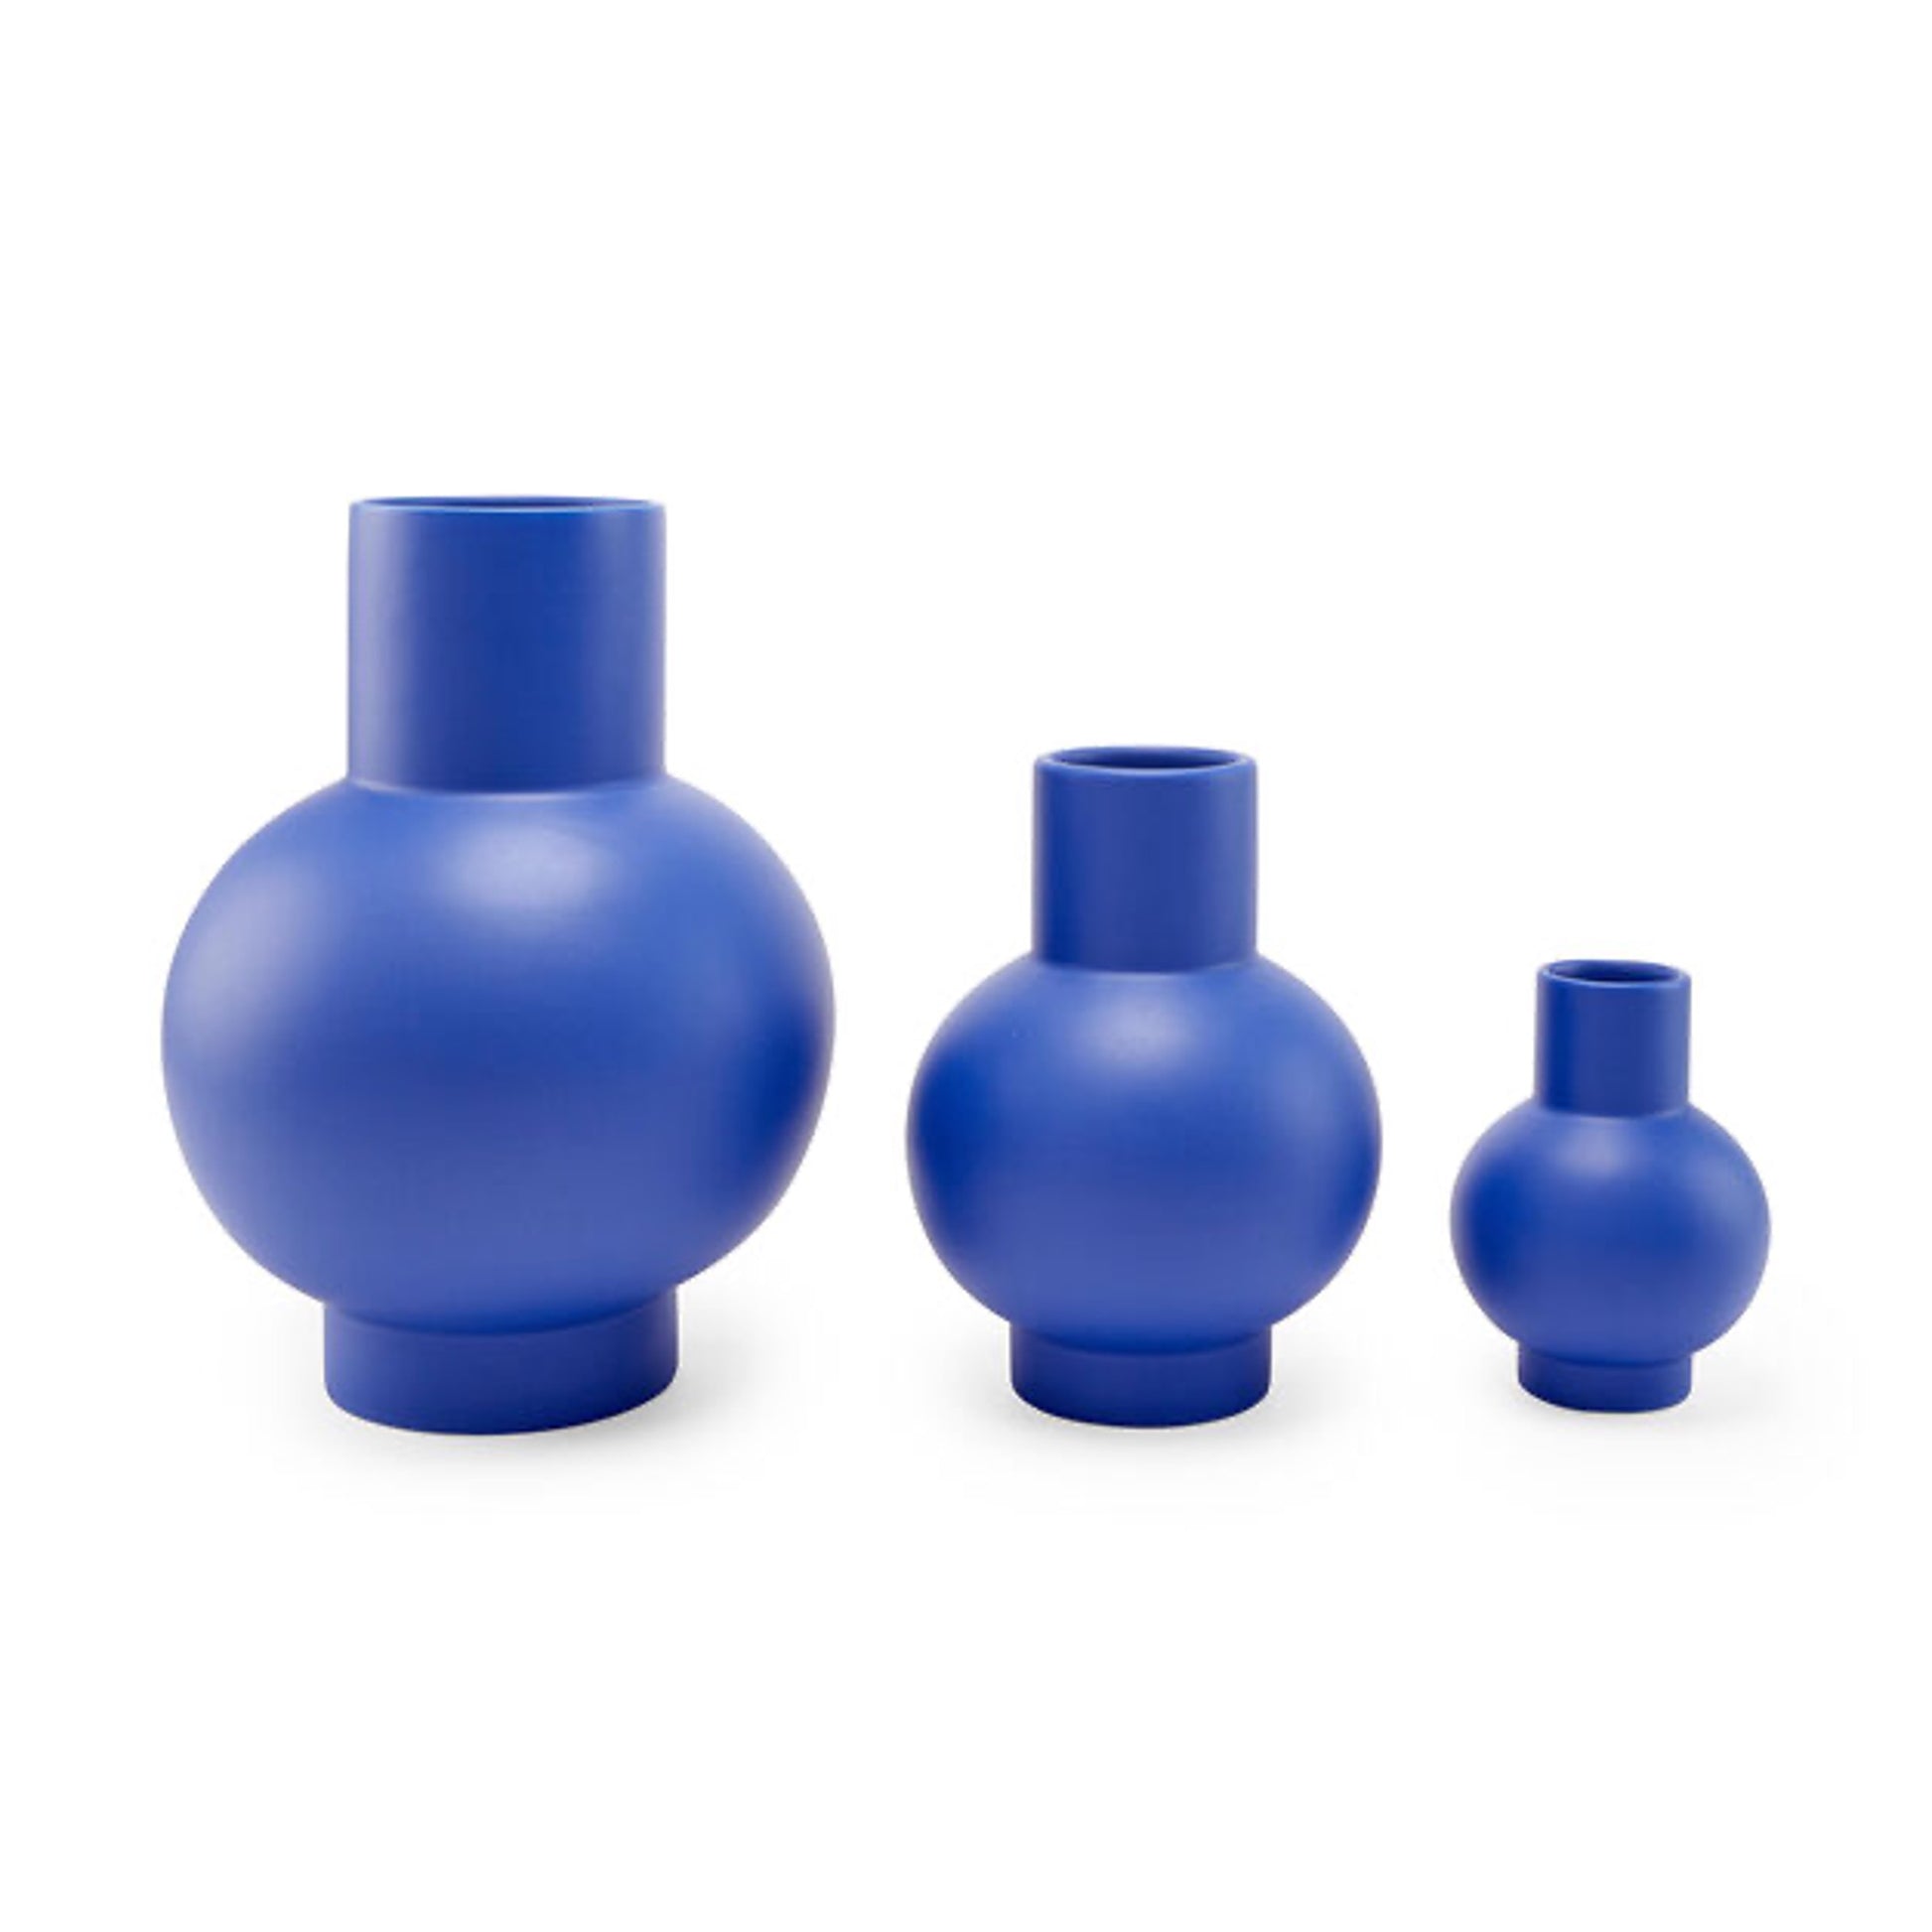 Horizon blue modern vases